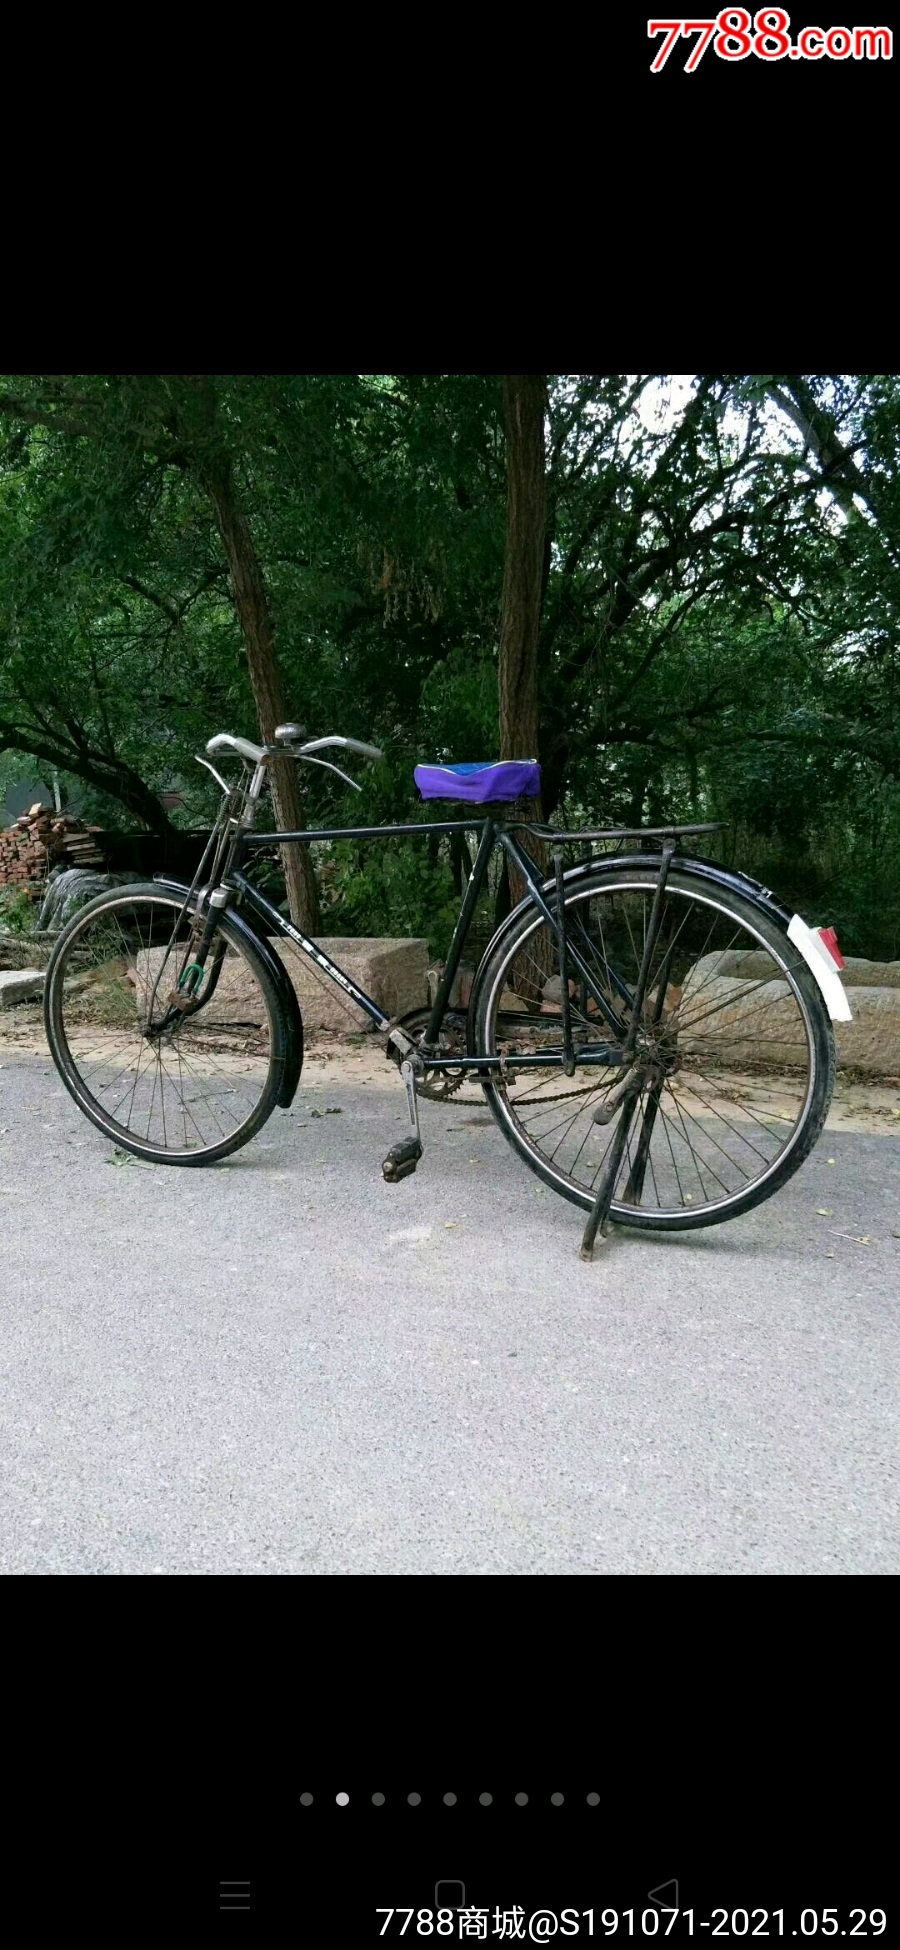 老《凤凰》牌自行车上海自行车三厂生产正常使用那个年代的宝马车